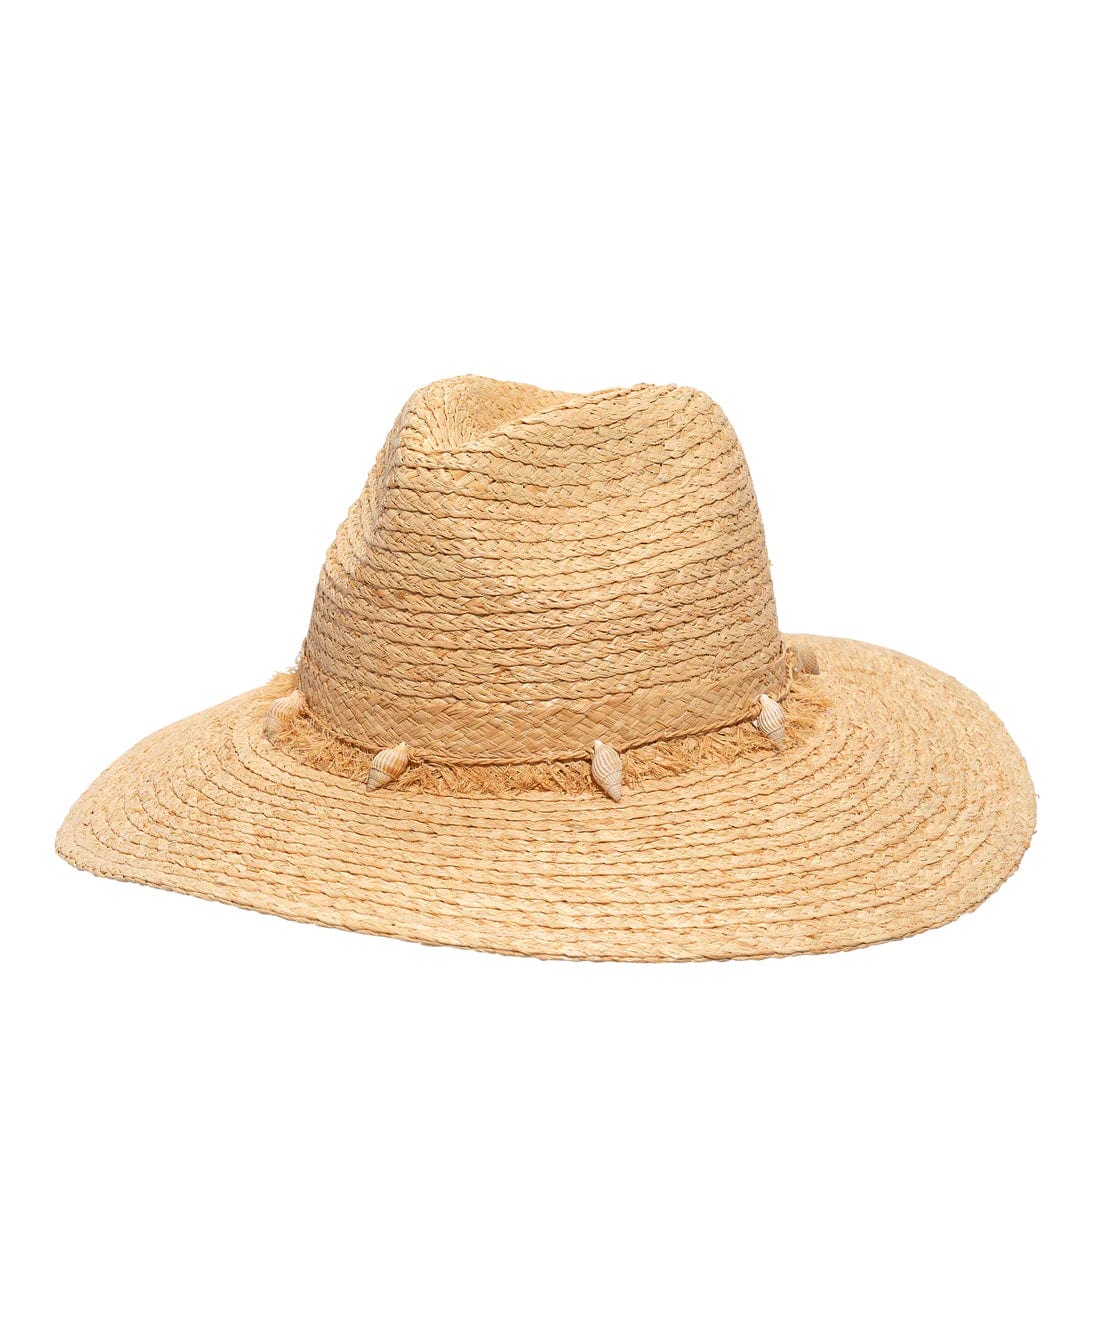 Sanibel Raffia Straw Hat